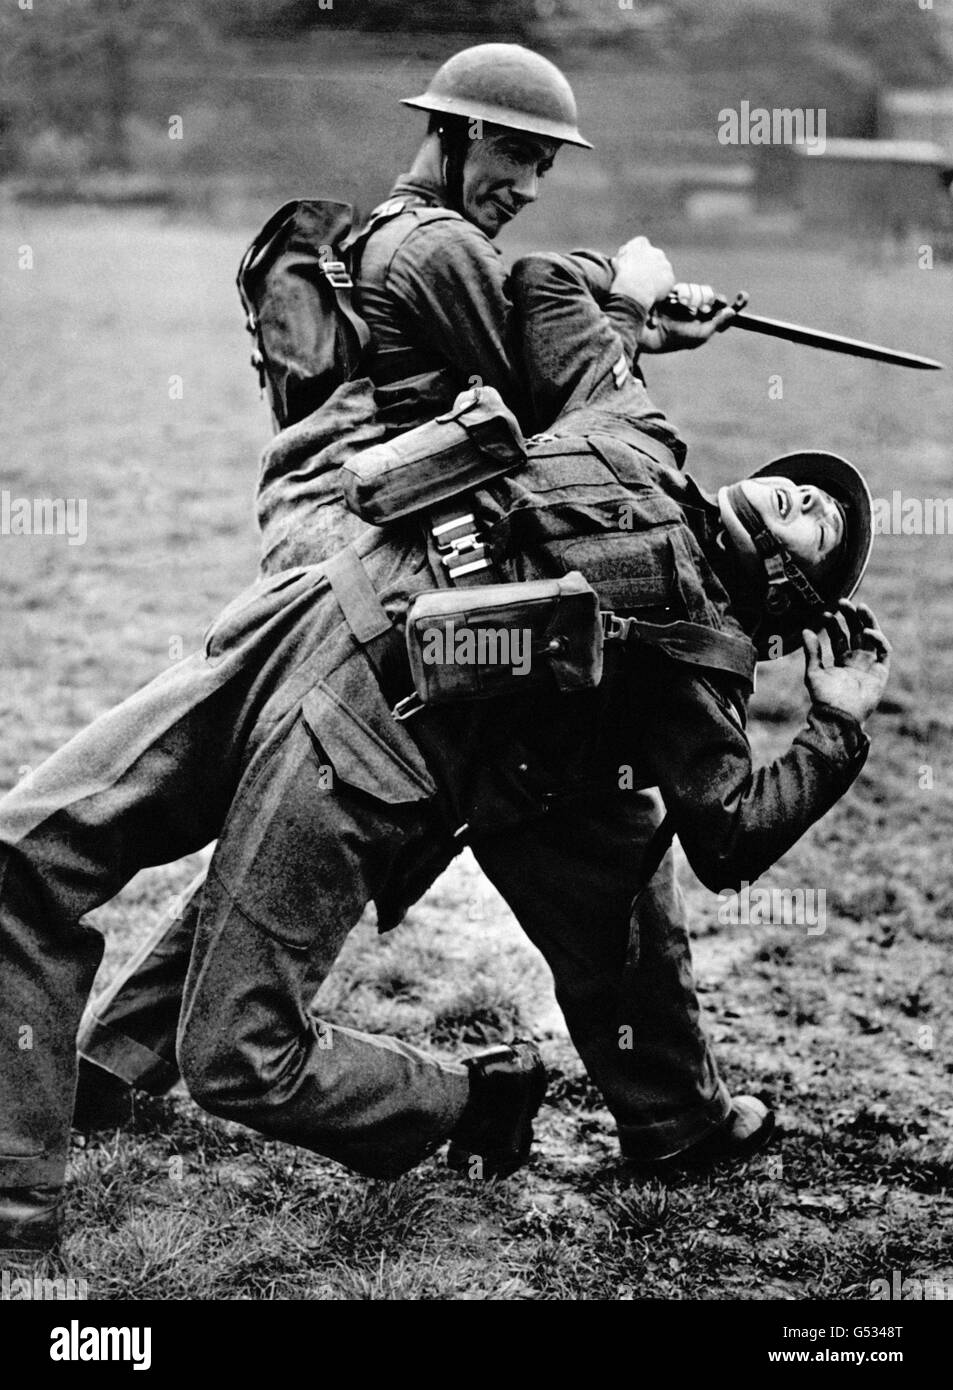 Zwei britische Soldaten genießen während des Zweiten Weltkriegs eine Lektion im unbewaffneten Kampf. Ein Soldat versucht, den anderen zu entwaffnen, der ein Bajonett hält. Stockfoto